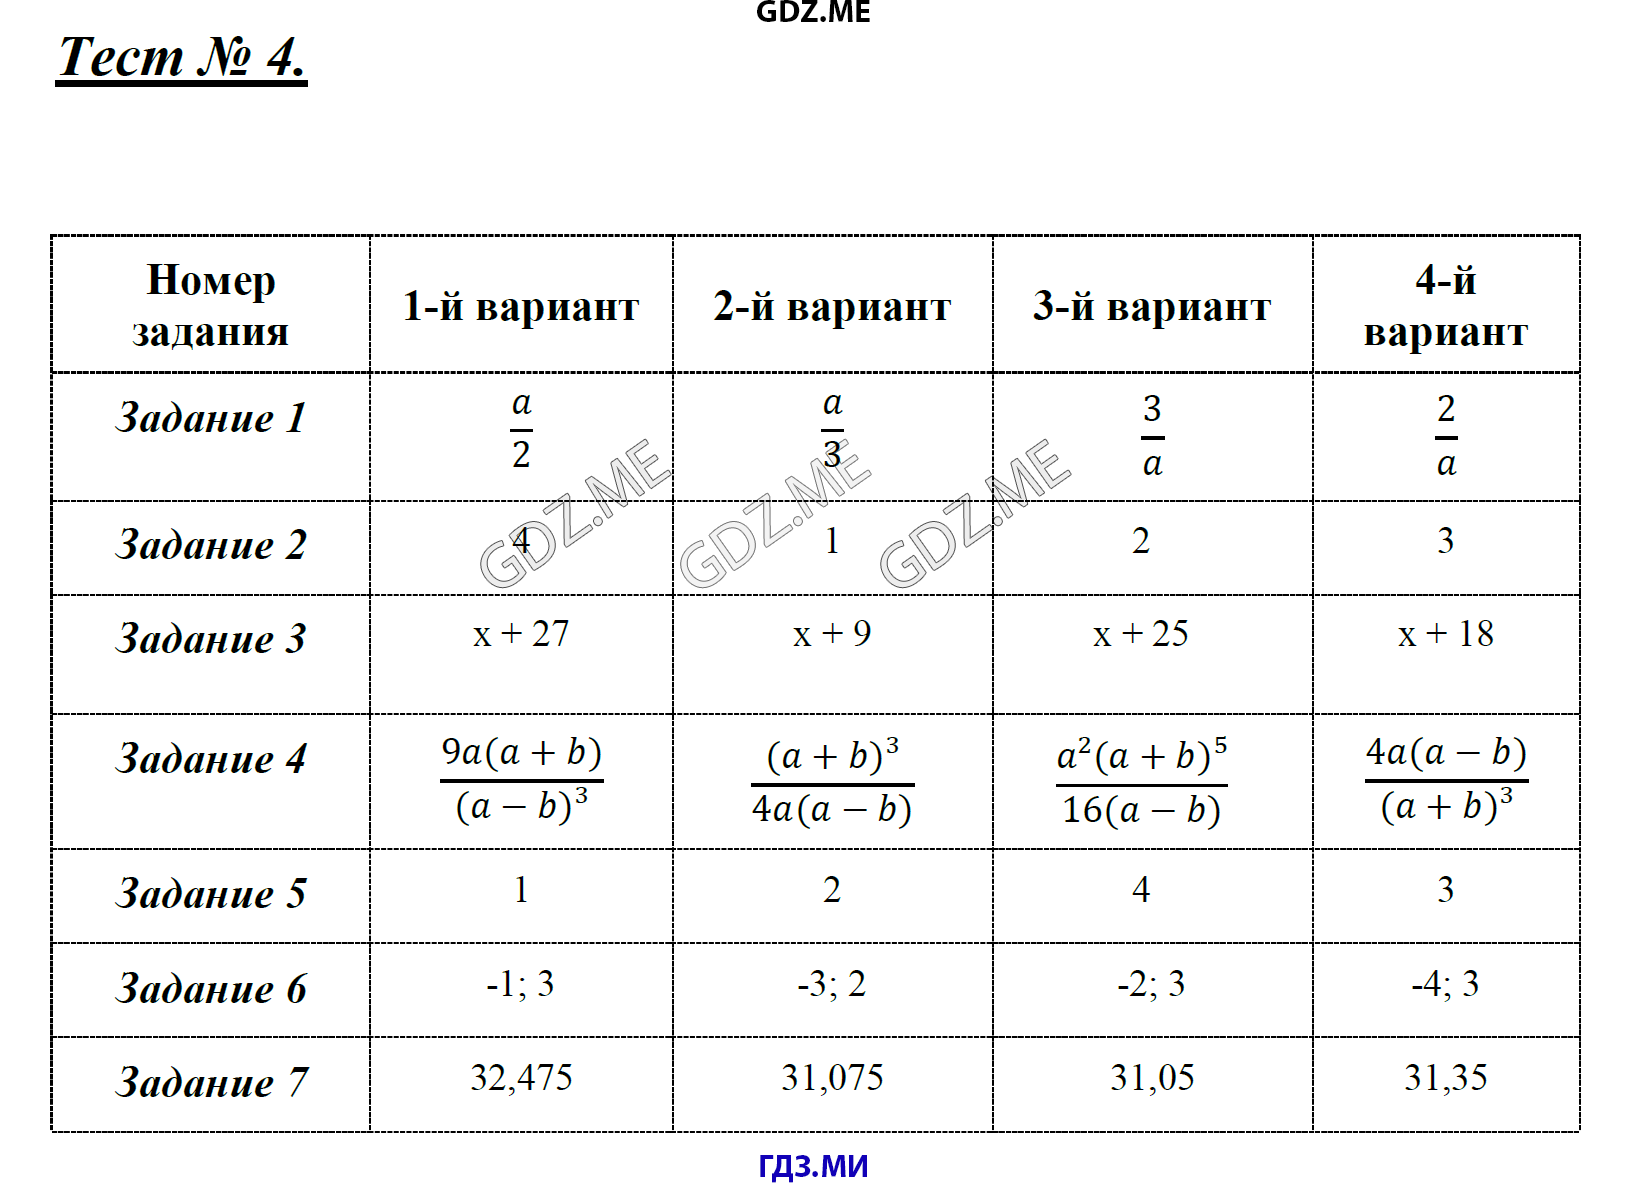 Алгебра 7 класс глазков. Контрольно измерительные материалы Алгебра восьмой класс Гаиашвили. Алгебра ответы 8 класс Гаиашвили. Тесты по алгебре 7 класс Глазков гдз. Тесты по алгебре 7 класс Глазков.